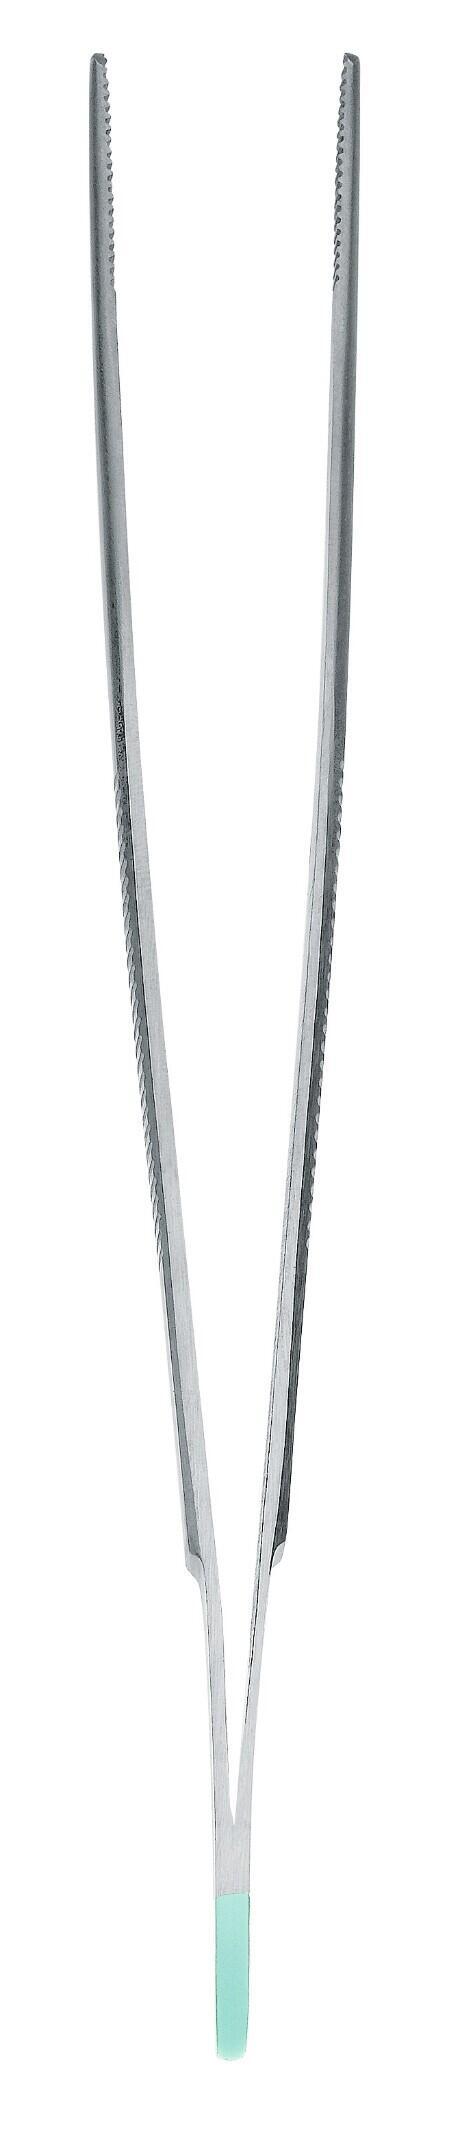 Instrument pour taches de rousseur pince à épiler standard anatomiquement droite 14cm